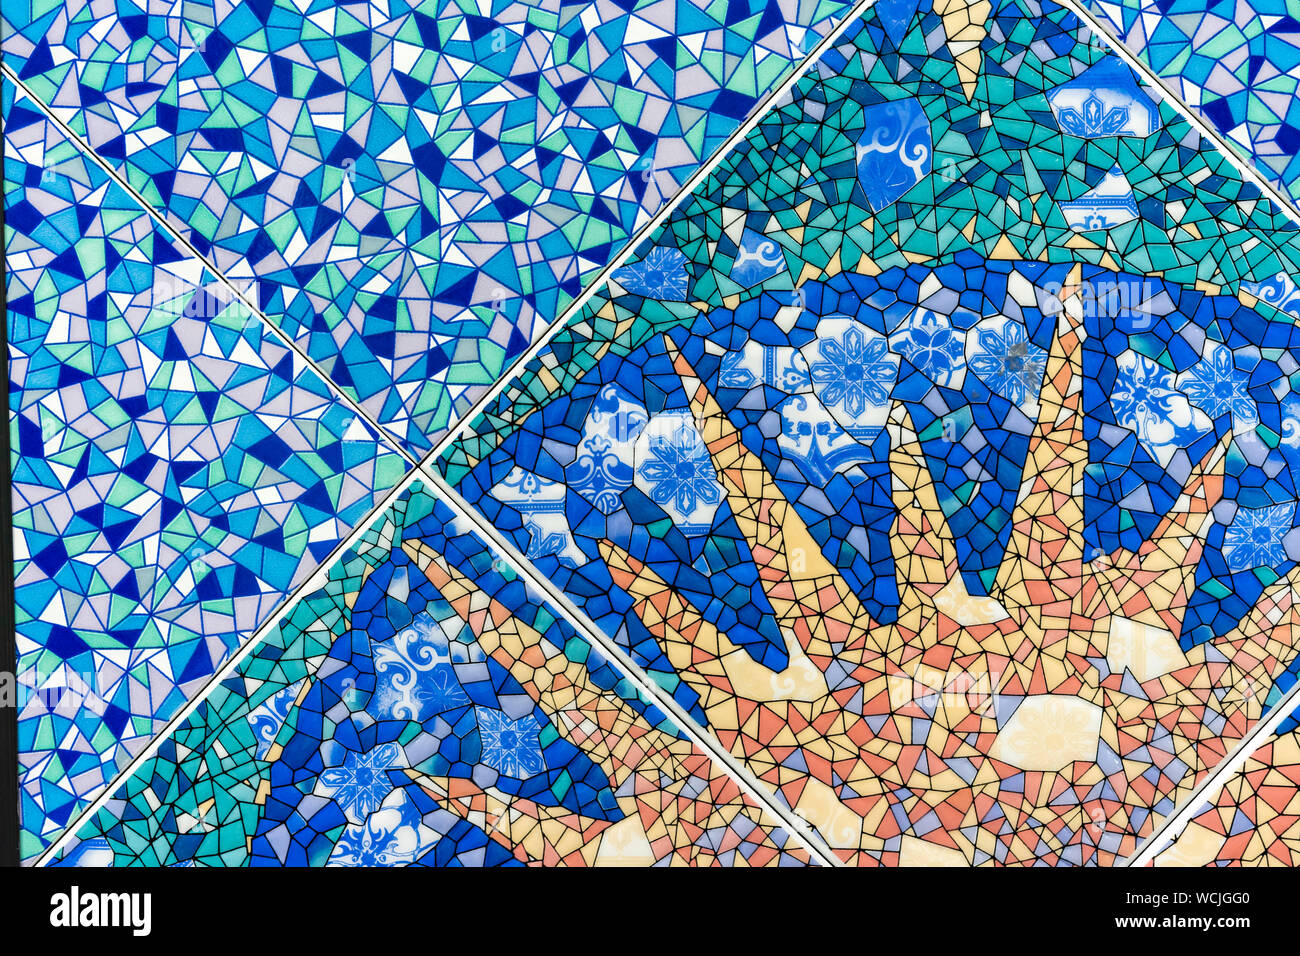 Carreaux de mosaïque en céramique bleu avec l'image du soleil. Background et texture des carreaux de céramique. Banque D'Images